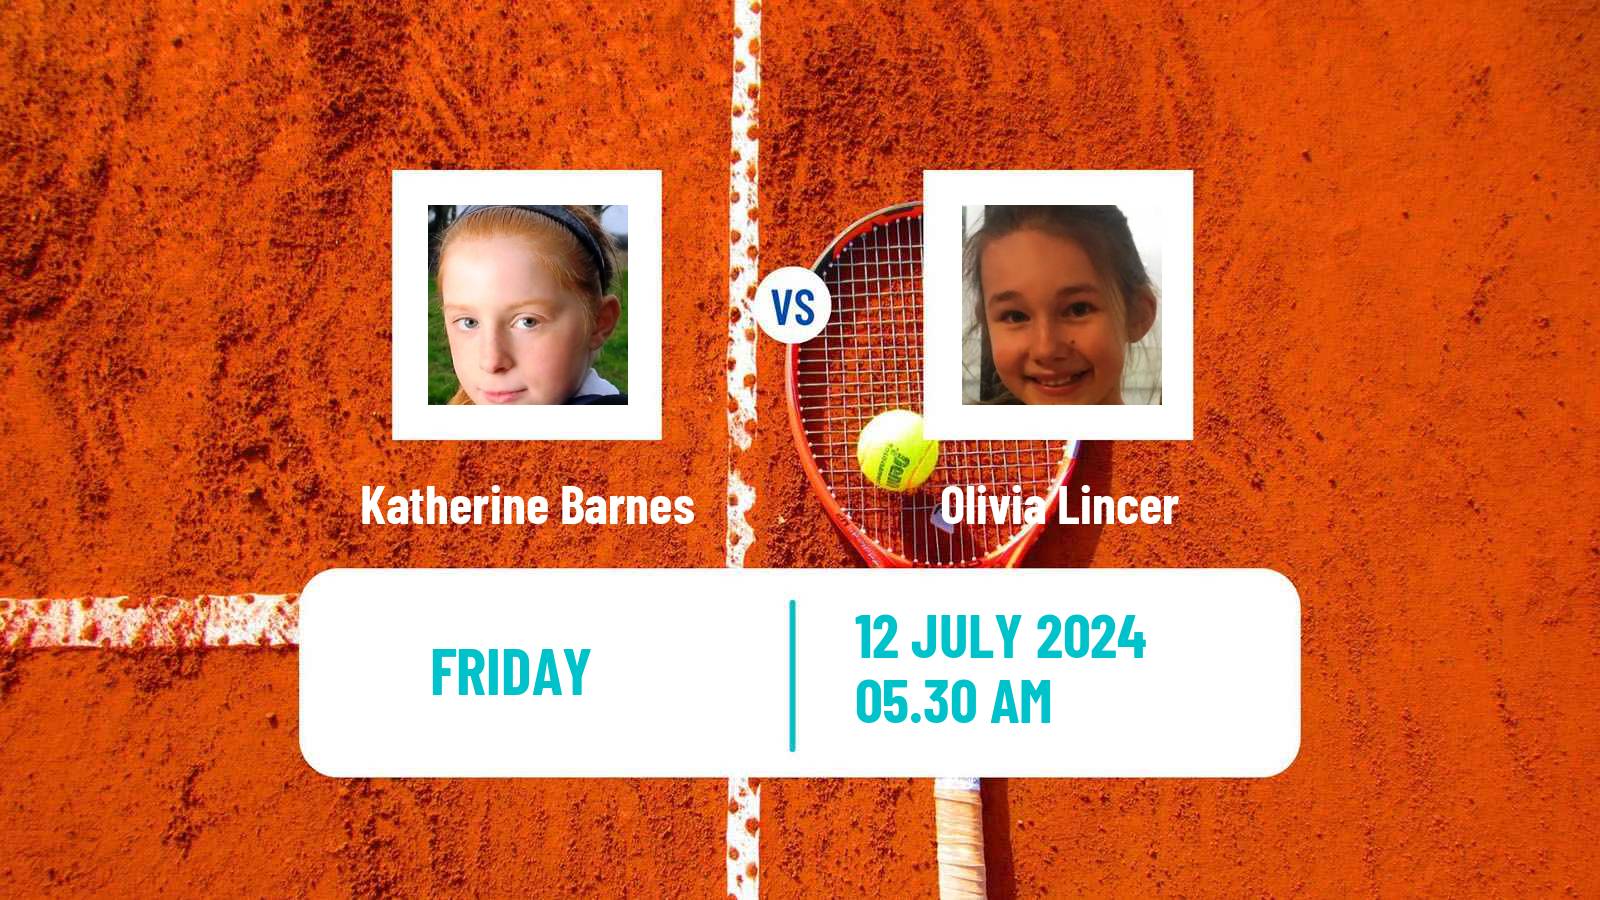 Tennis ITF W15 Grodzisk Mazowiecki Women Katherine Barnes - Olivia Lincer